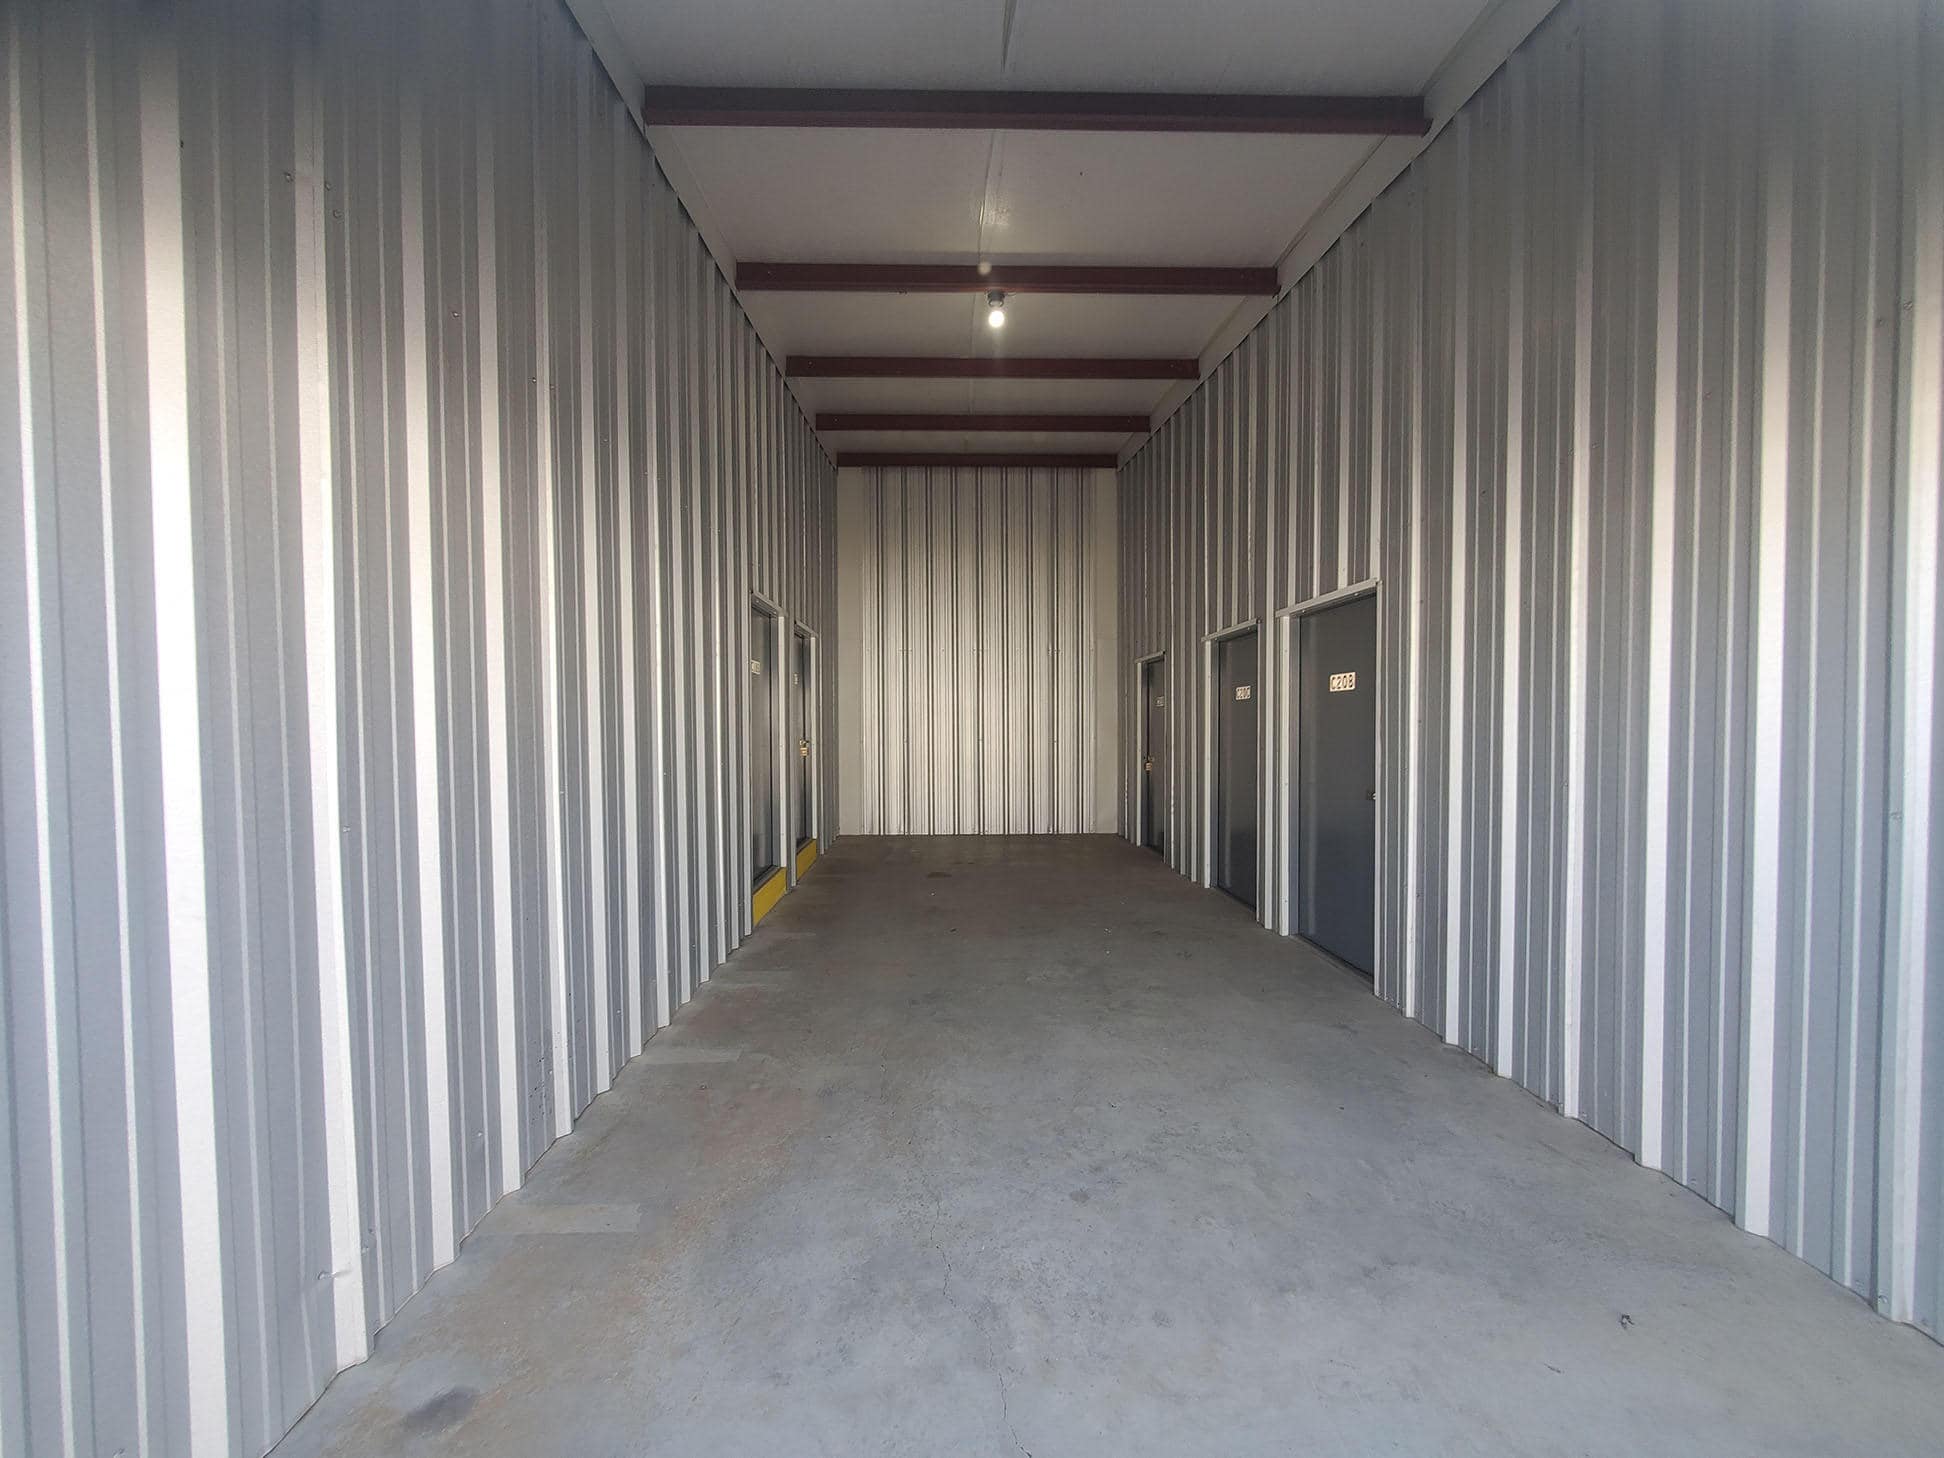 Valley Storage - Hagerstown, MD, US, cheap storage units